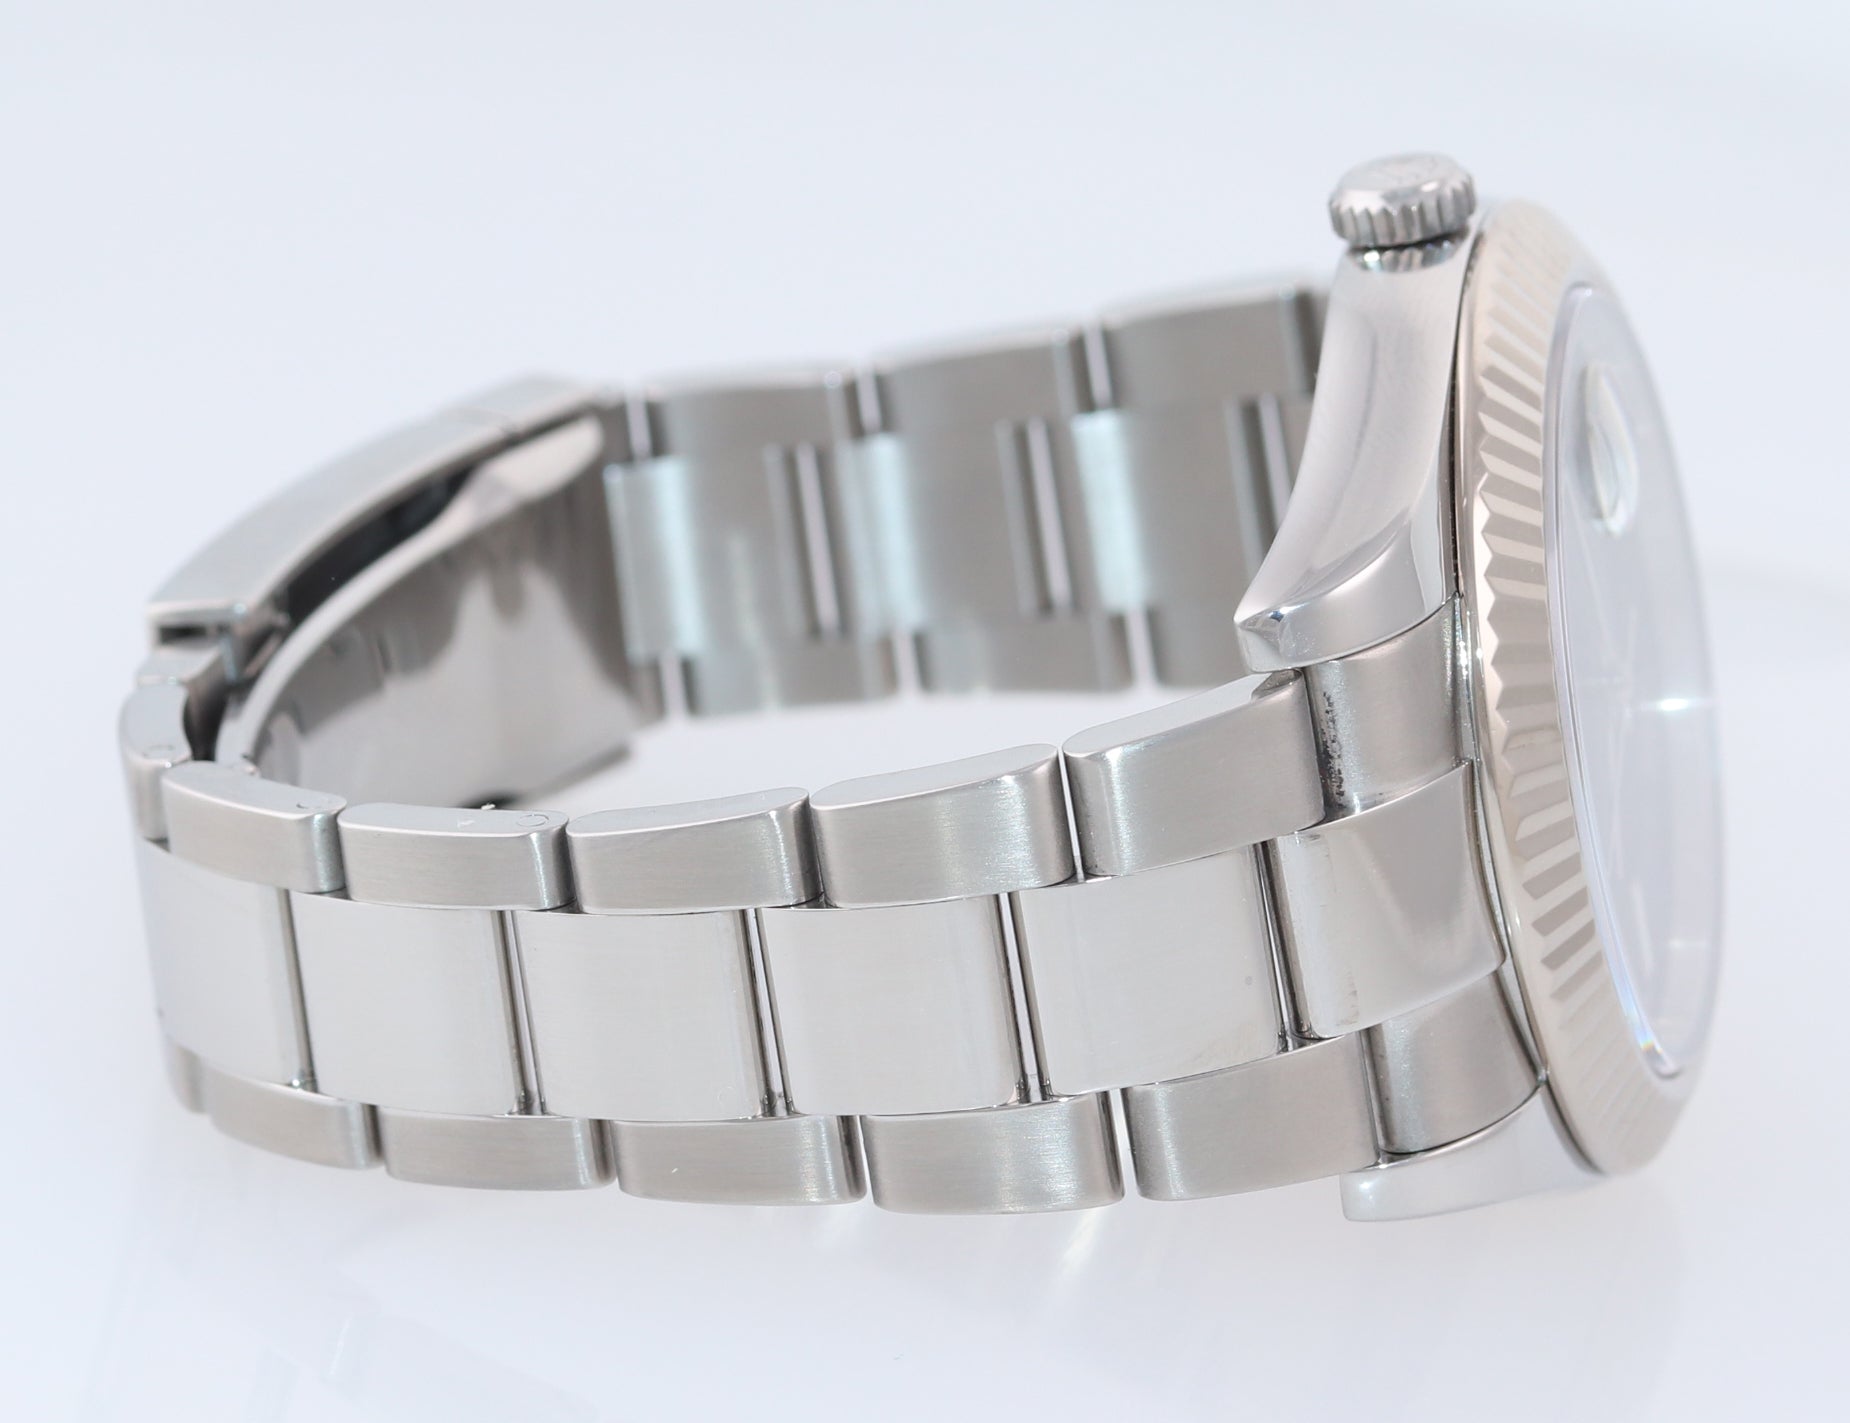 2017 MINT Rolex DateJust 2 Steel Grey Roman Wimbledon 41mm 116334 Watch Box